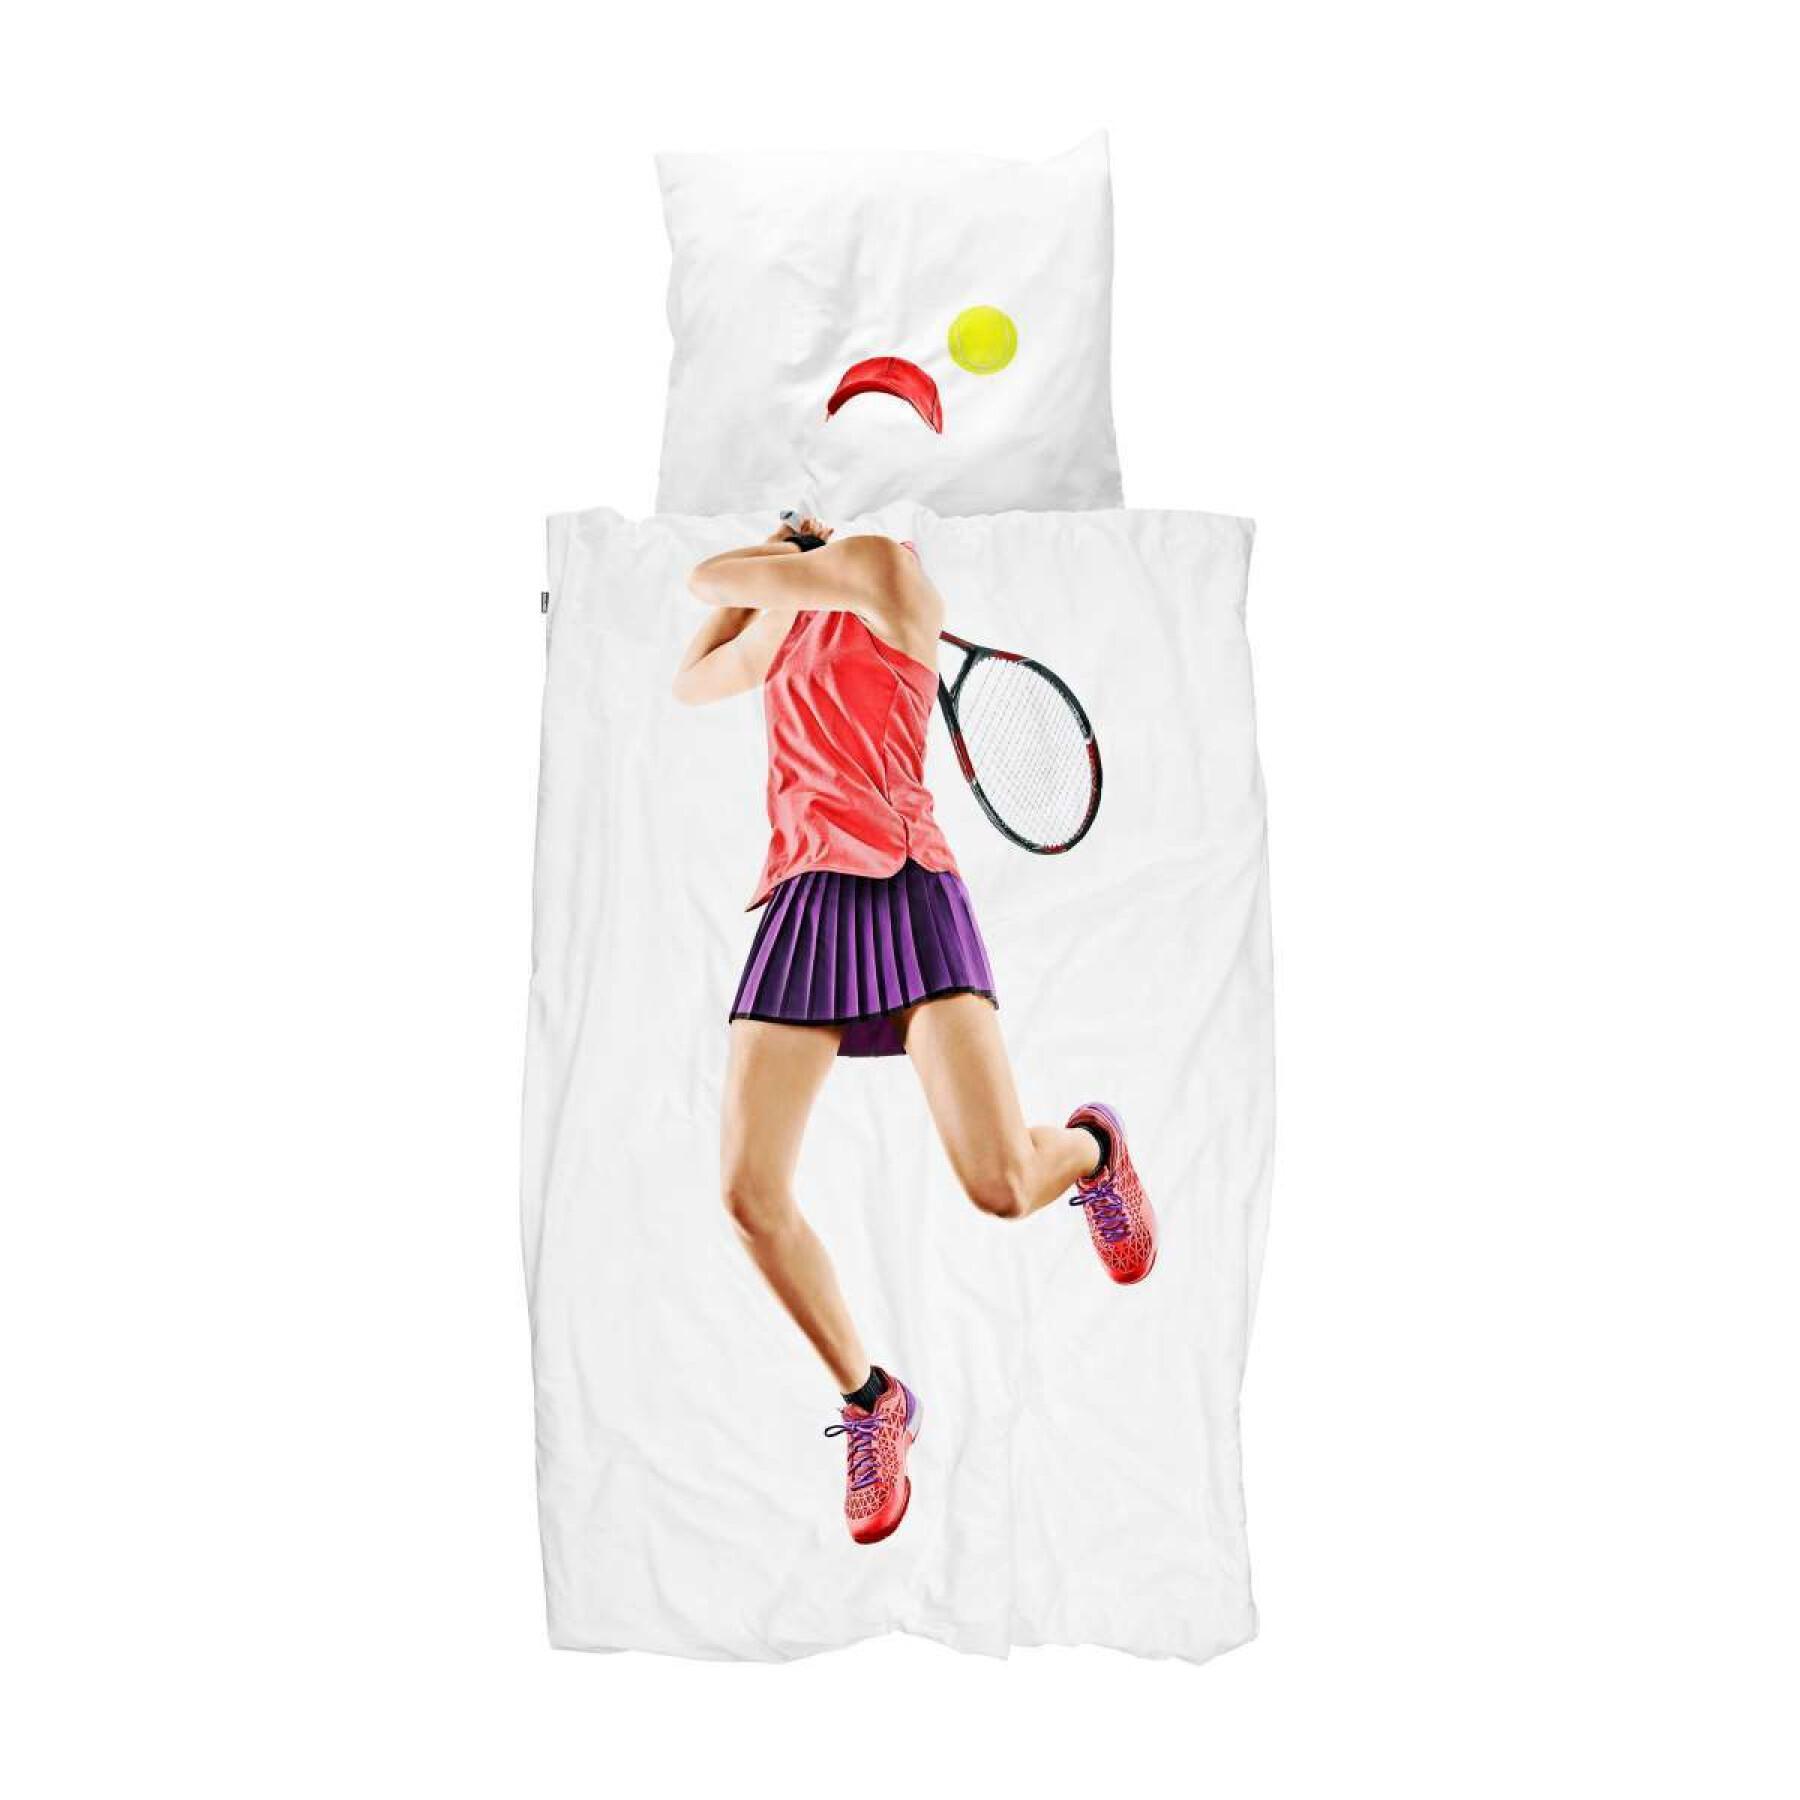 Dekbedovertrek en kussensloop voor kinderen Snurk Tennis Pro Light